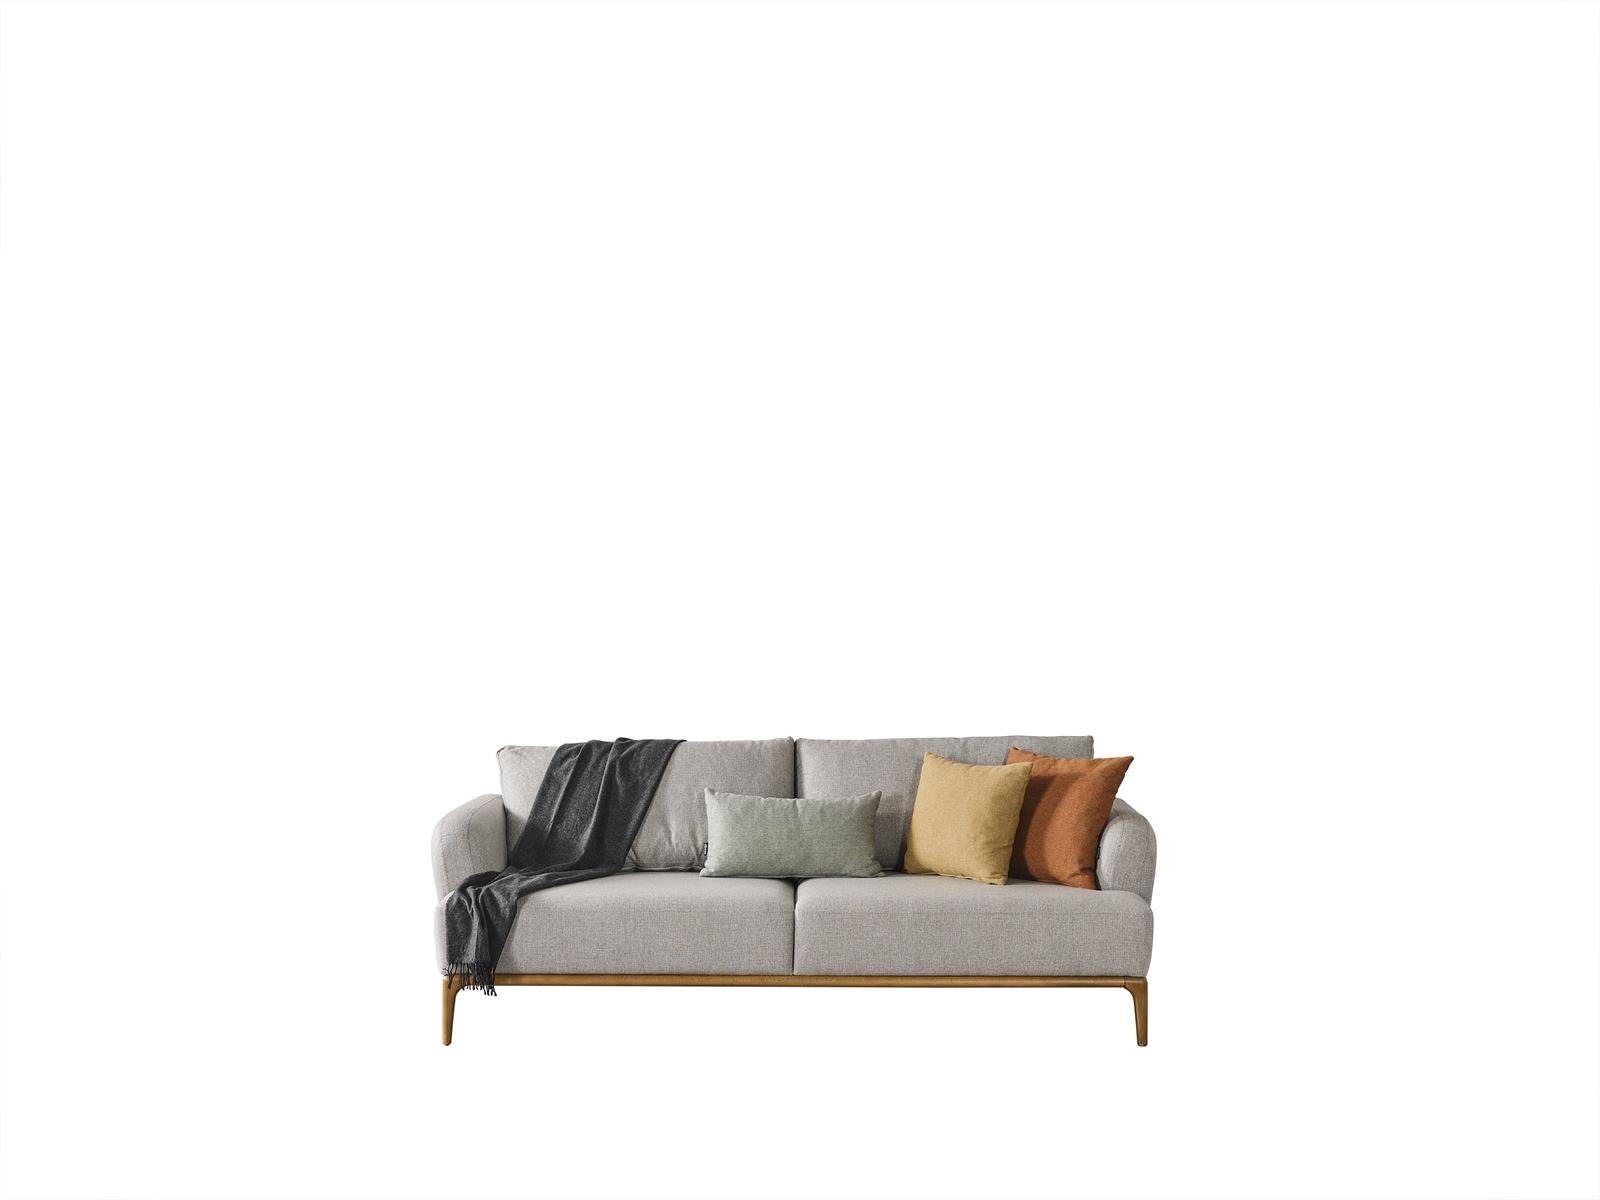 JVmoebel 3-Sitzer Sofa Couch Möbel Sofas Textil Stoff Polster Couchen xxl Dreisitzer